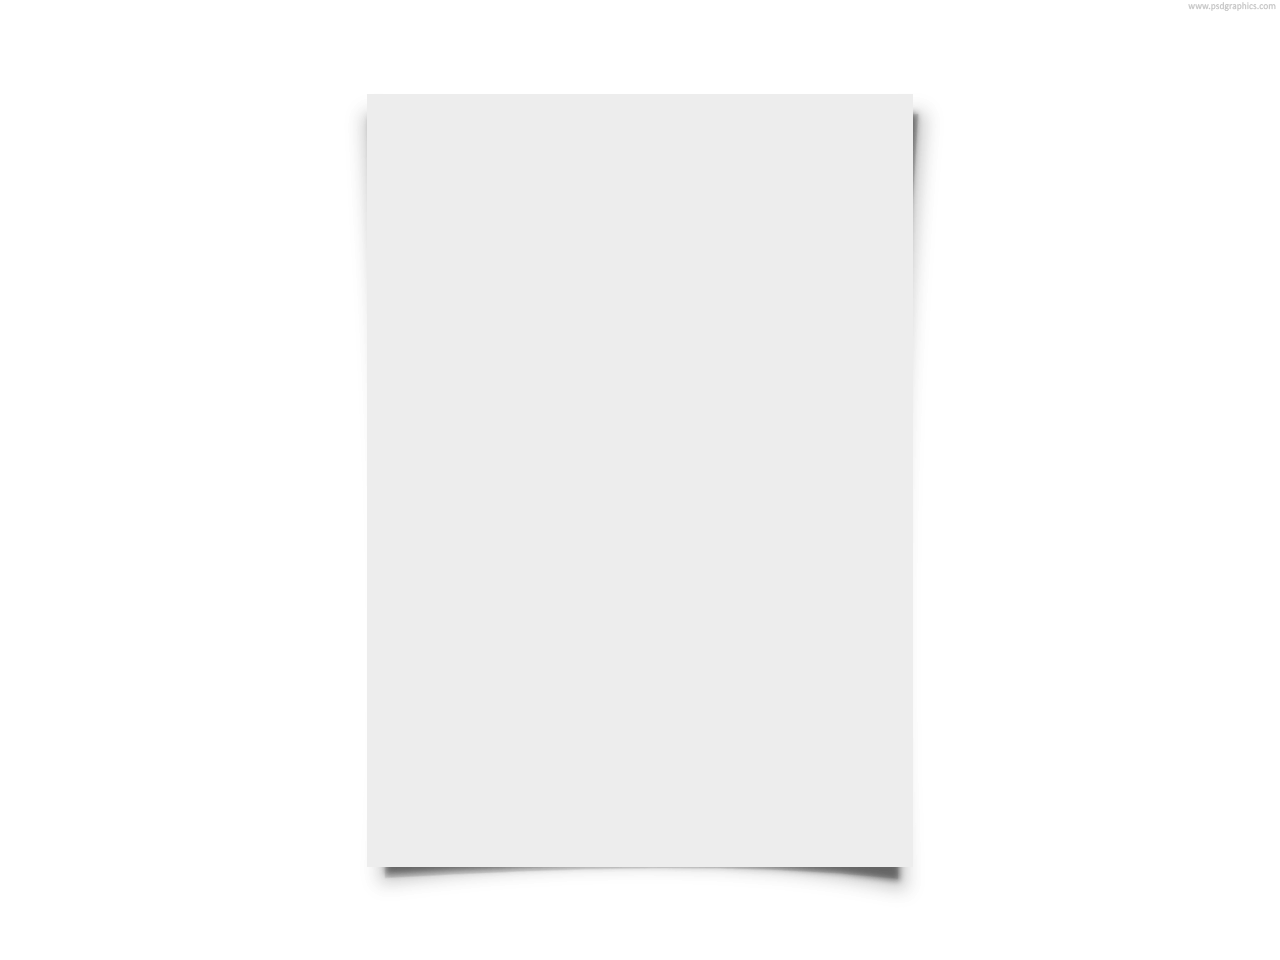 plain white paper